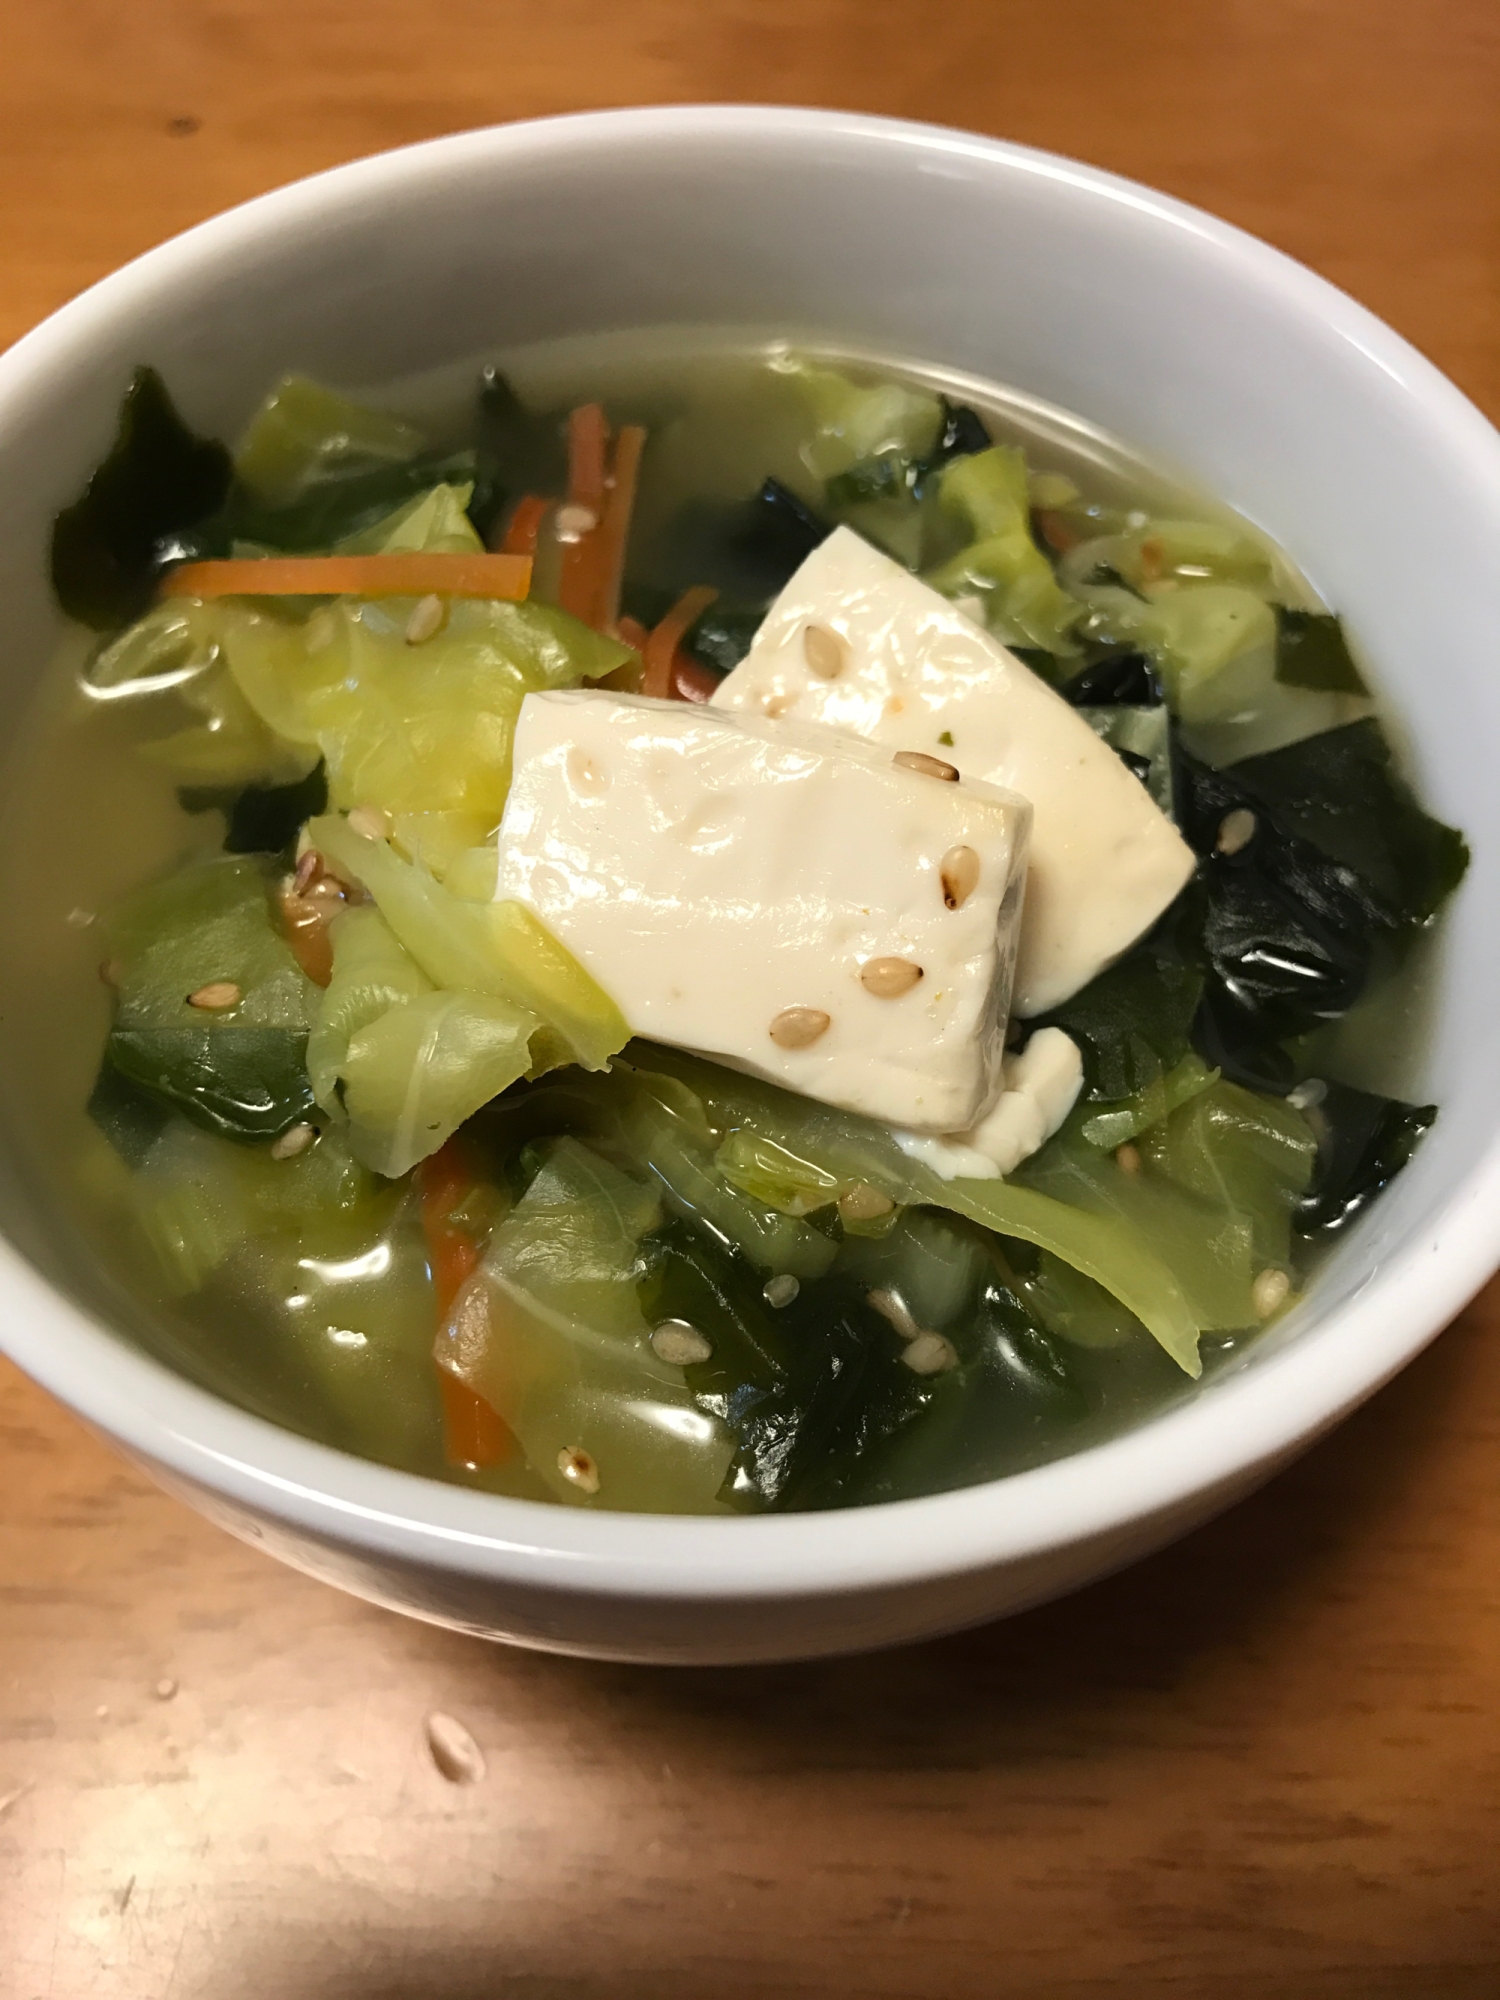 キャベツとわかめの韓国風スープ